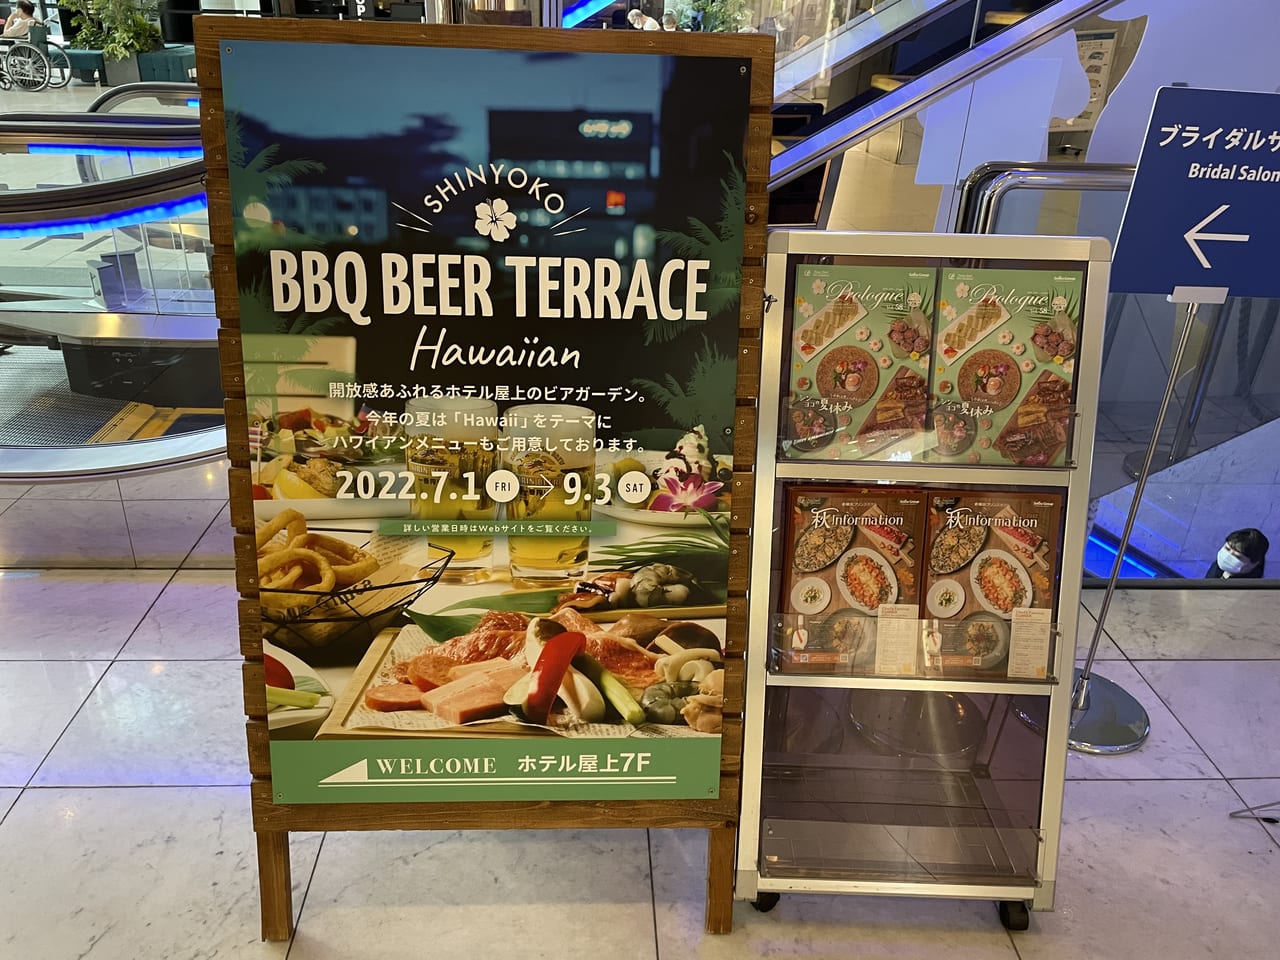 BBQ BEER TERRACE -HAWAIIAN - 新横浜 - プリンスホテル